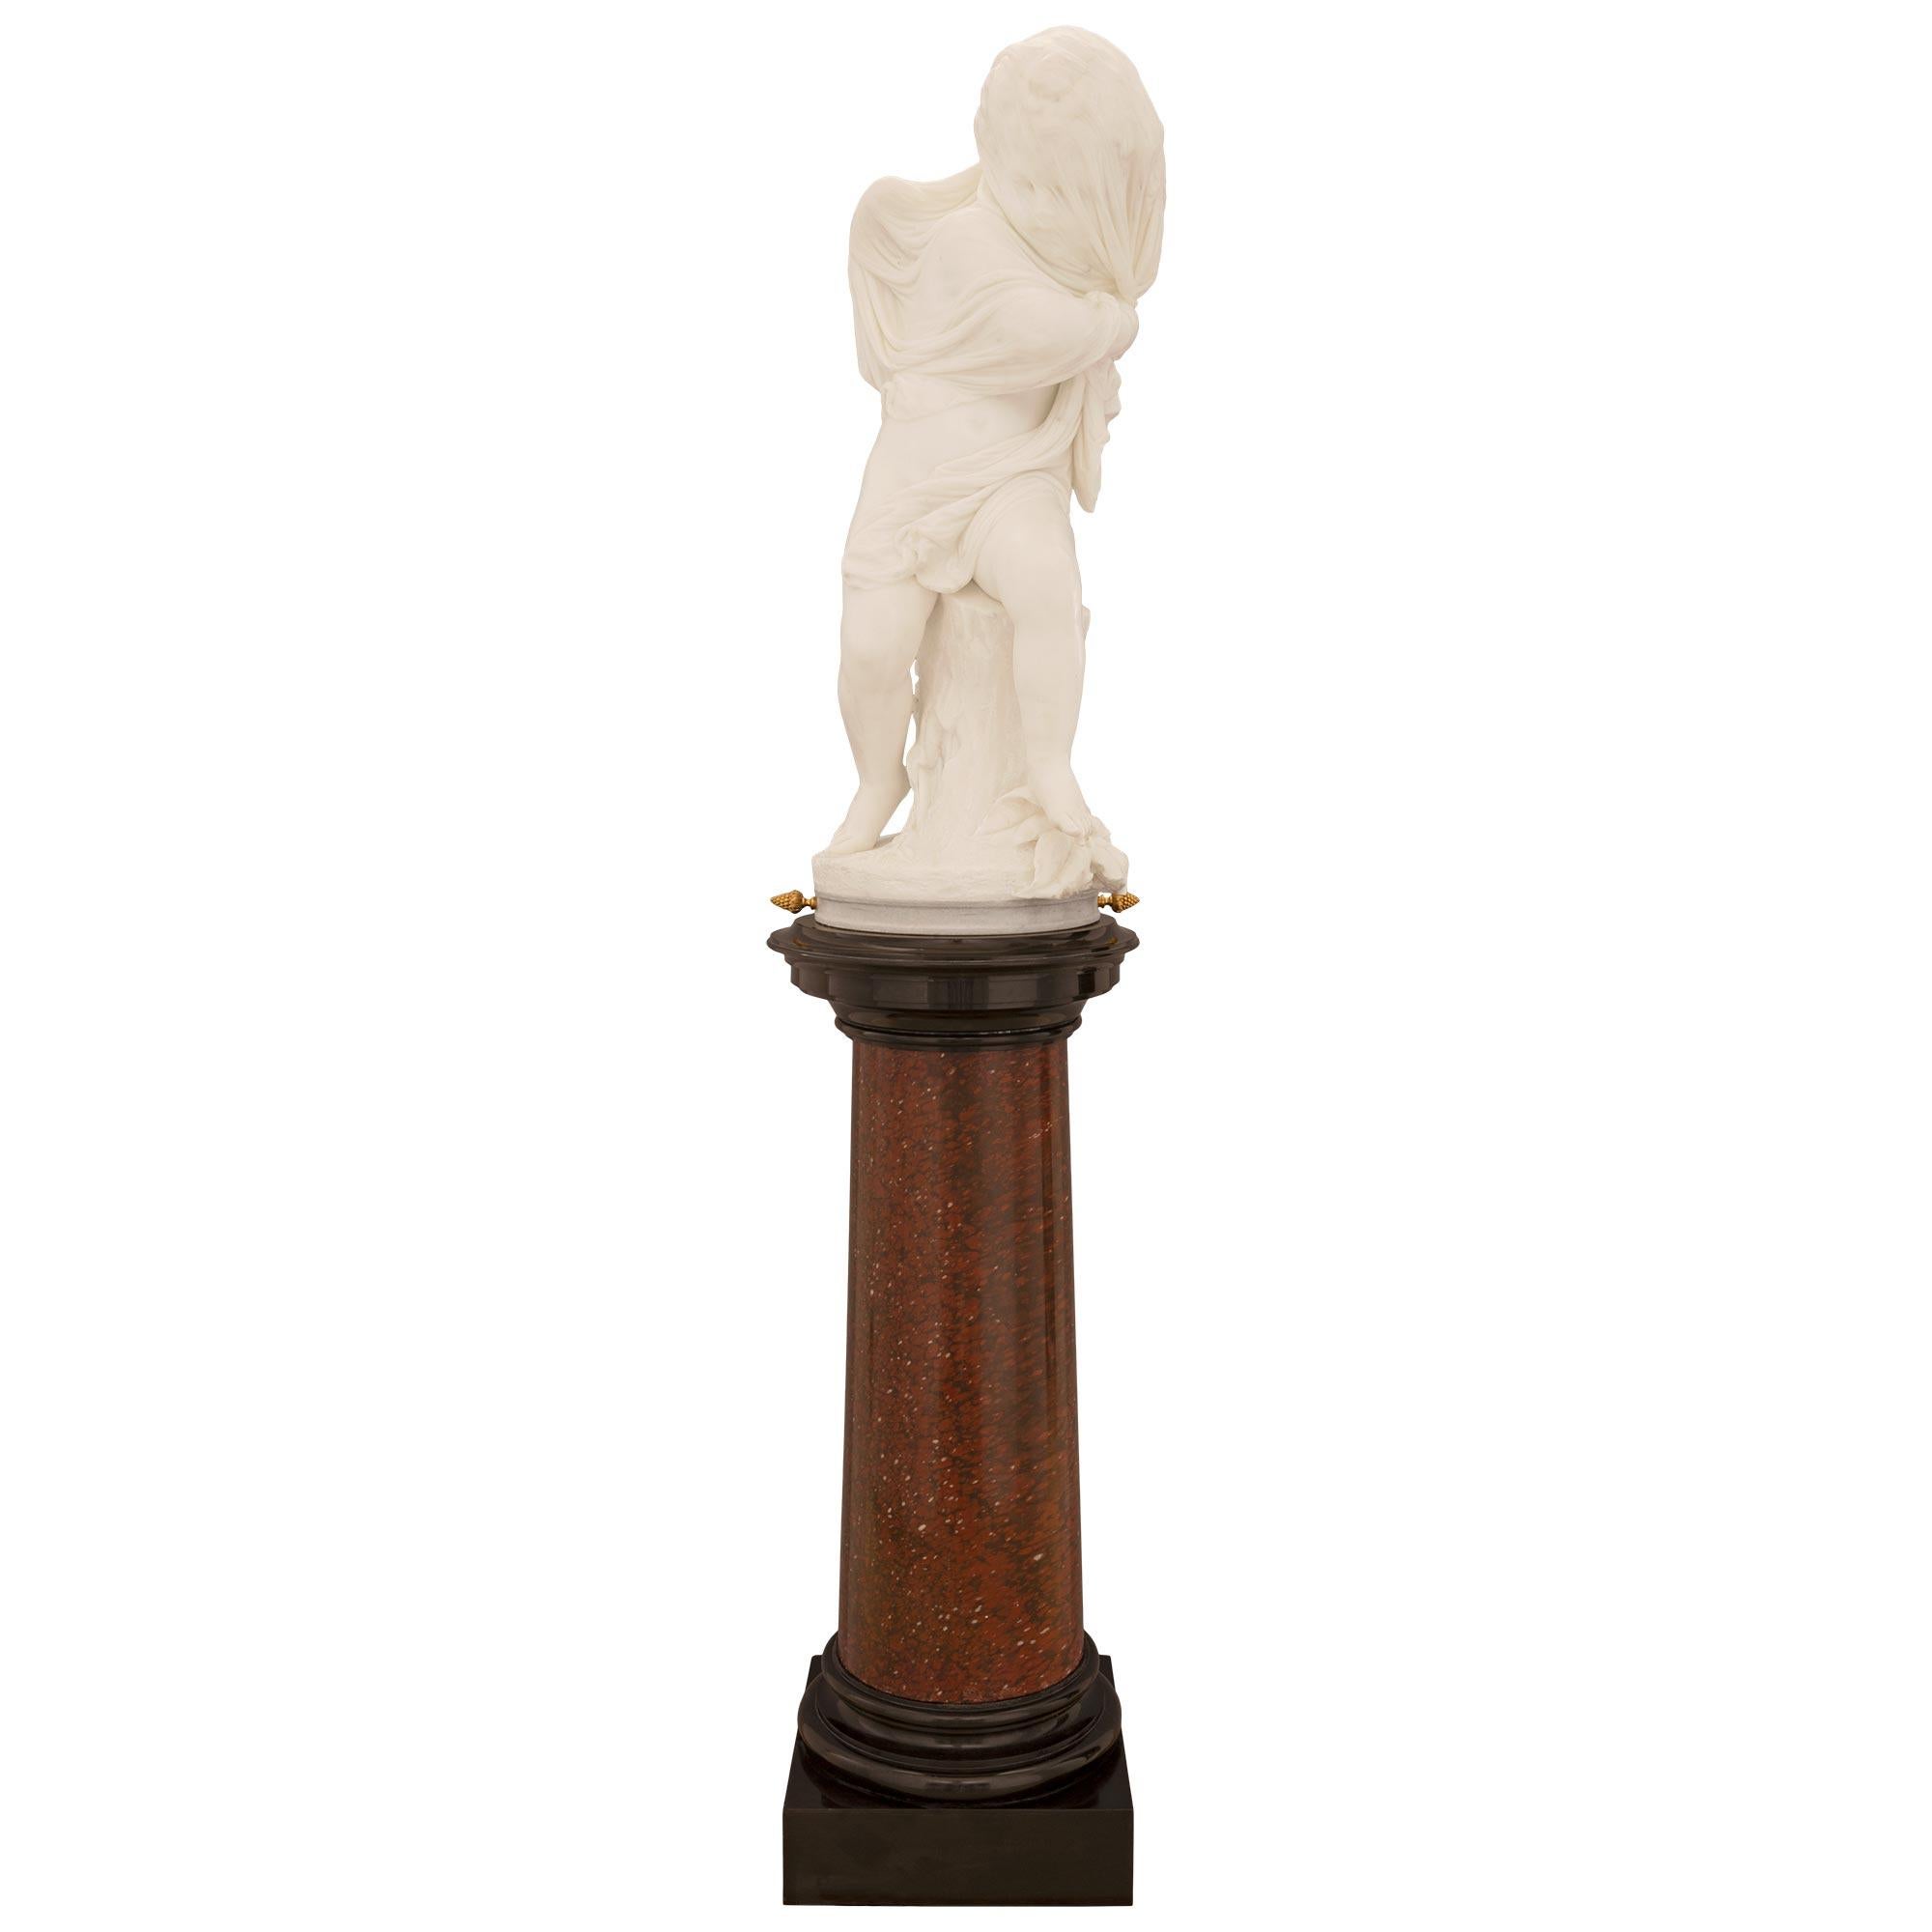 Une exquise statue en marbre blanc de Carrare de très haute qualité, datant du 19e siècle, sur son piédestal original en marbre Rouge Griotte et noir de Belgique, nommée 